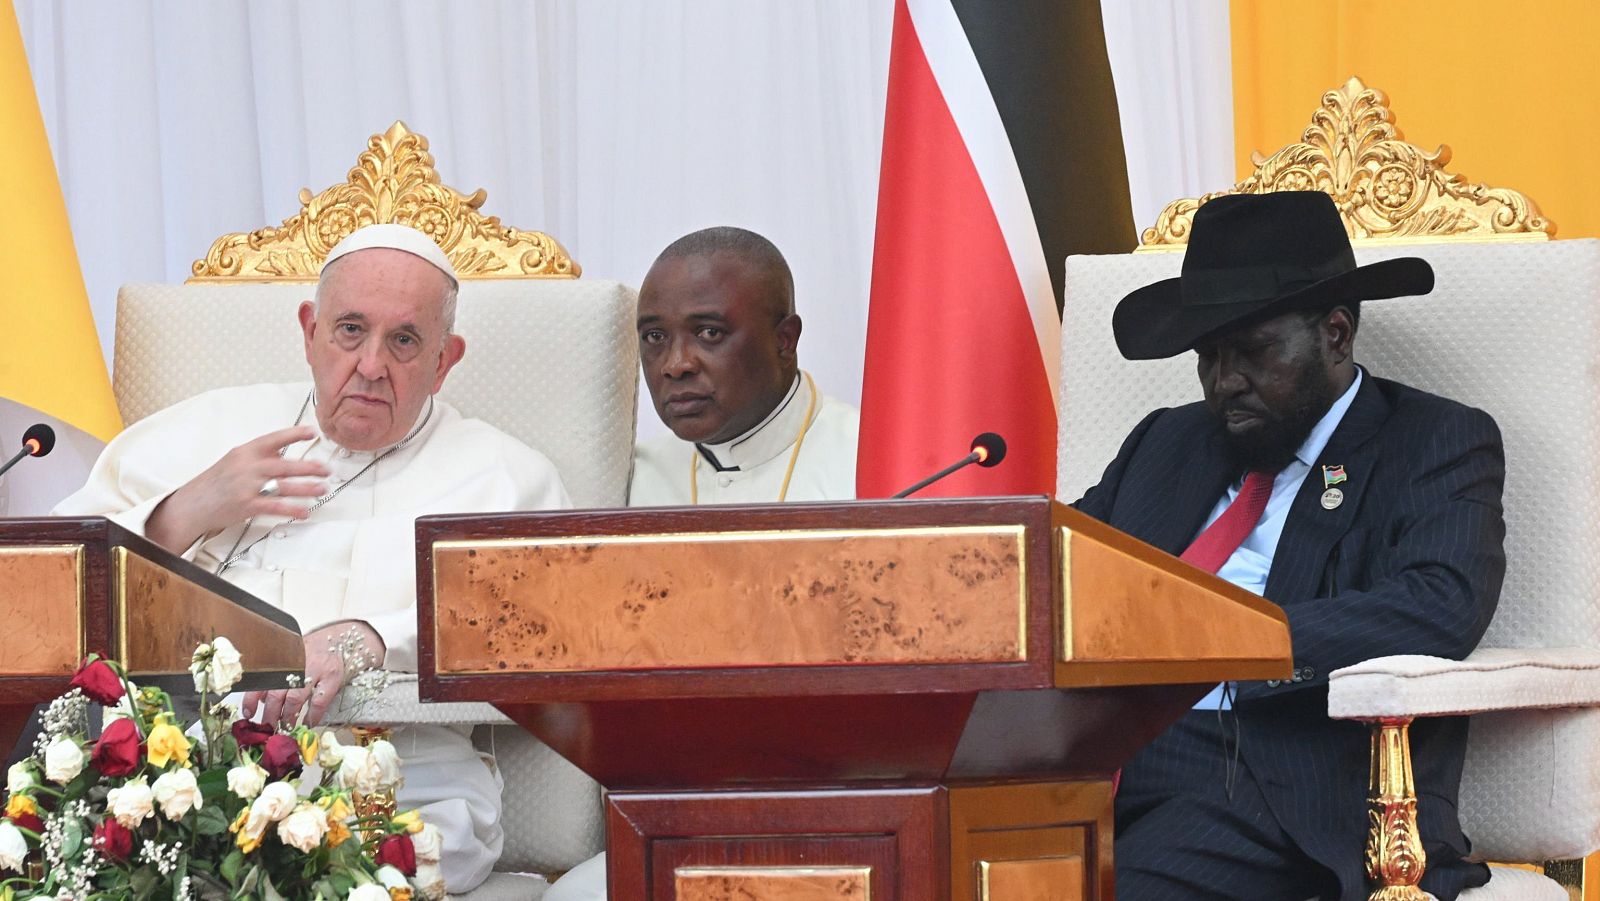 El papa Francisco durante su visita a Sudán del Sur